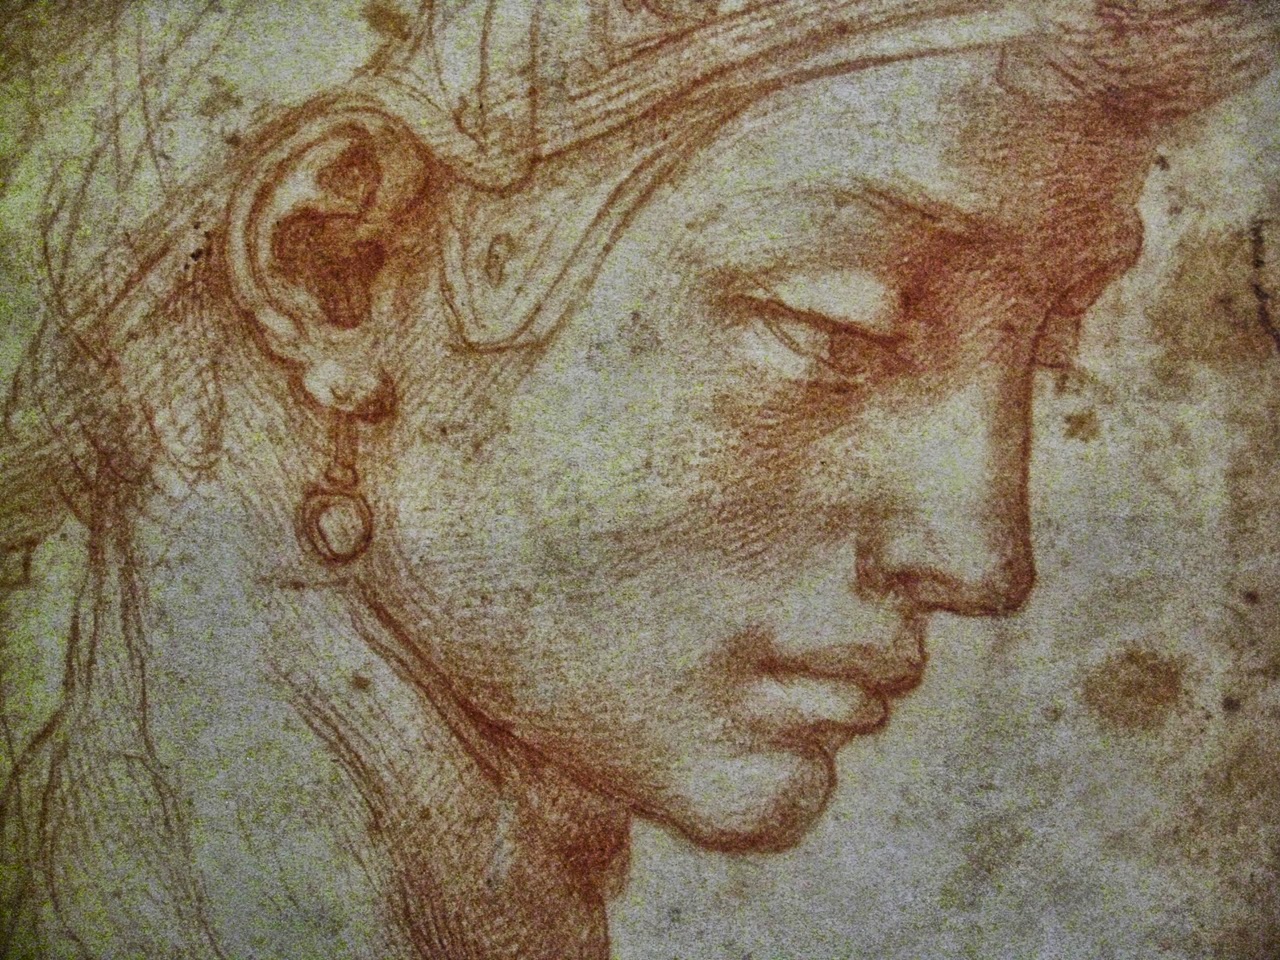 Head+of+a+Woman+-+Michelangelo